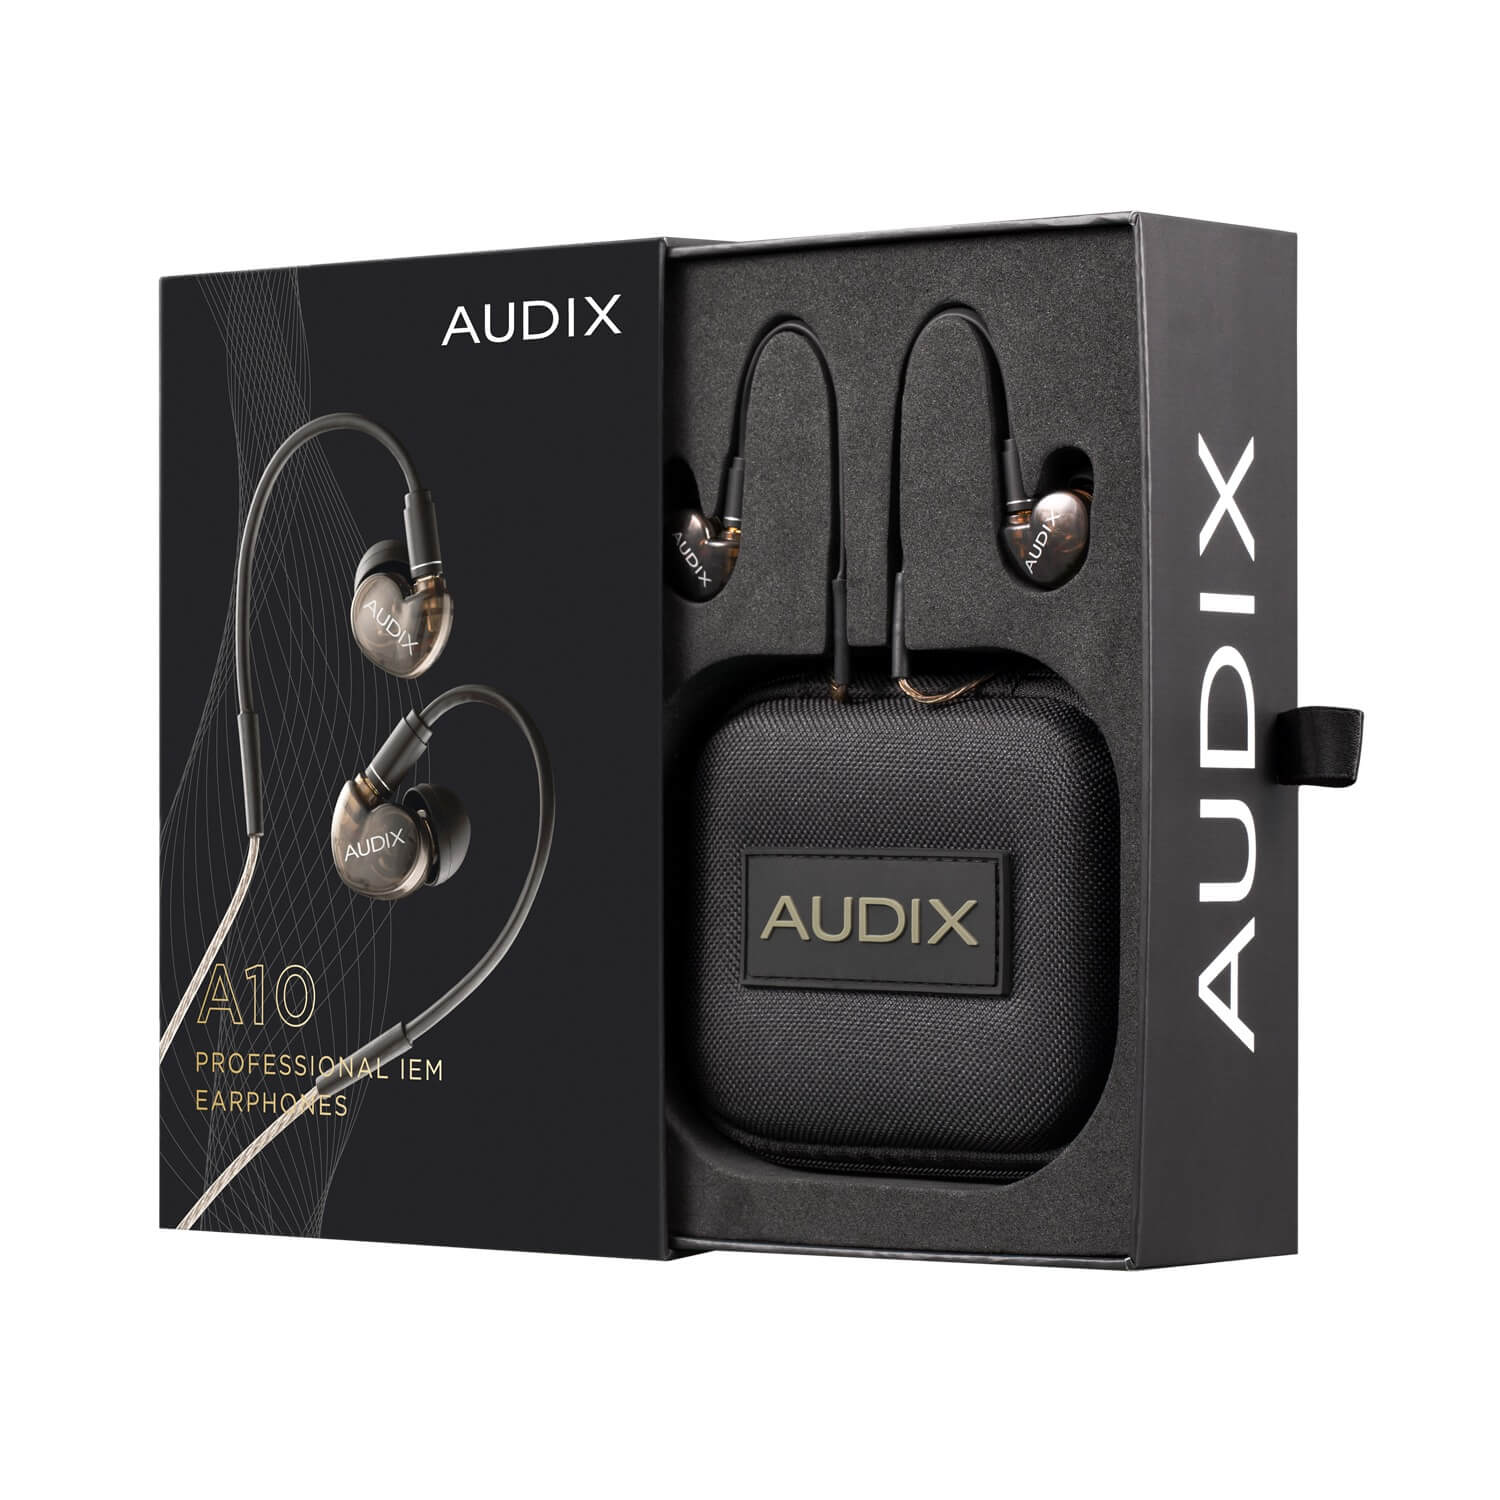 Audix A10 - Single Driver Professional IEM Earphones, box